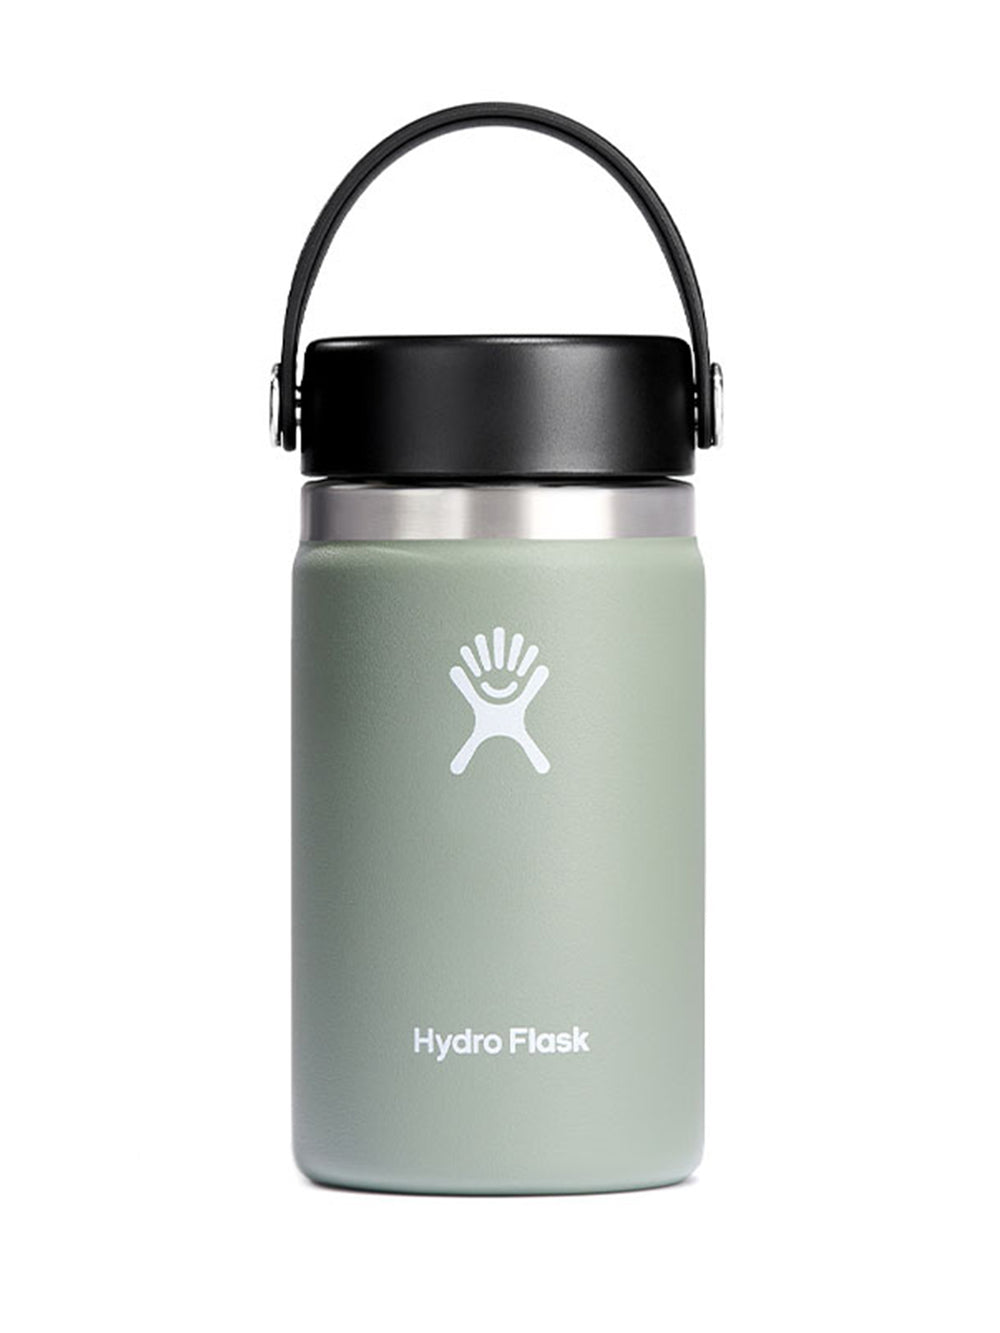 [Hydro Flask] HYDRATION ワイドマウス【12oz】 (354ml) / 日本正規品 ハイドロフラスク タンブラー 断熱ボトル 23FW 5089021 60_1 - Puravida!プラヴィダ